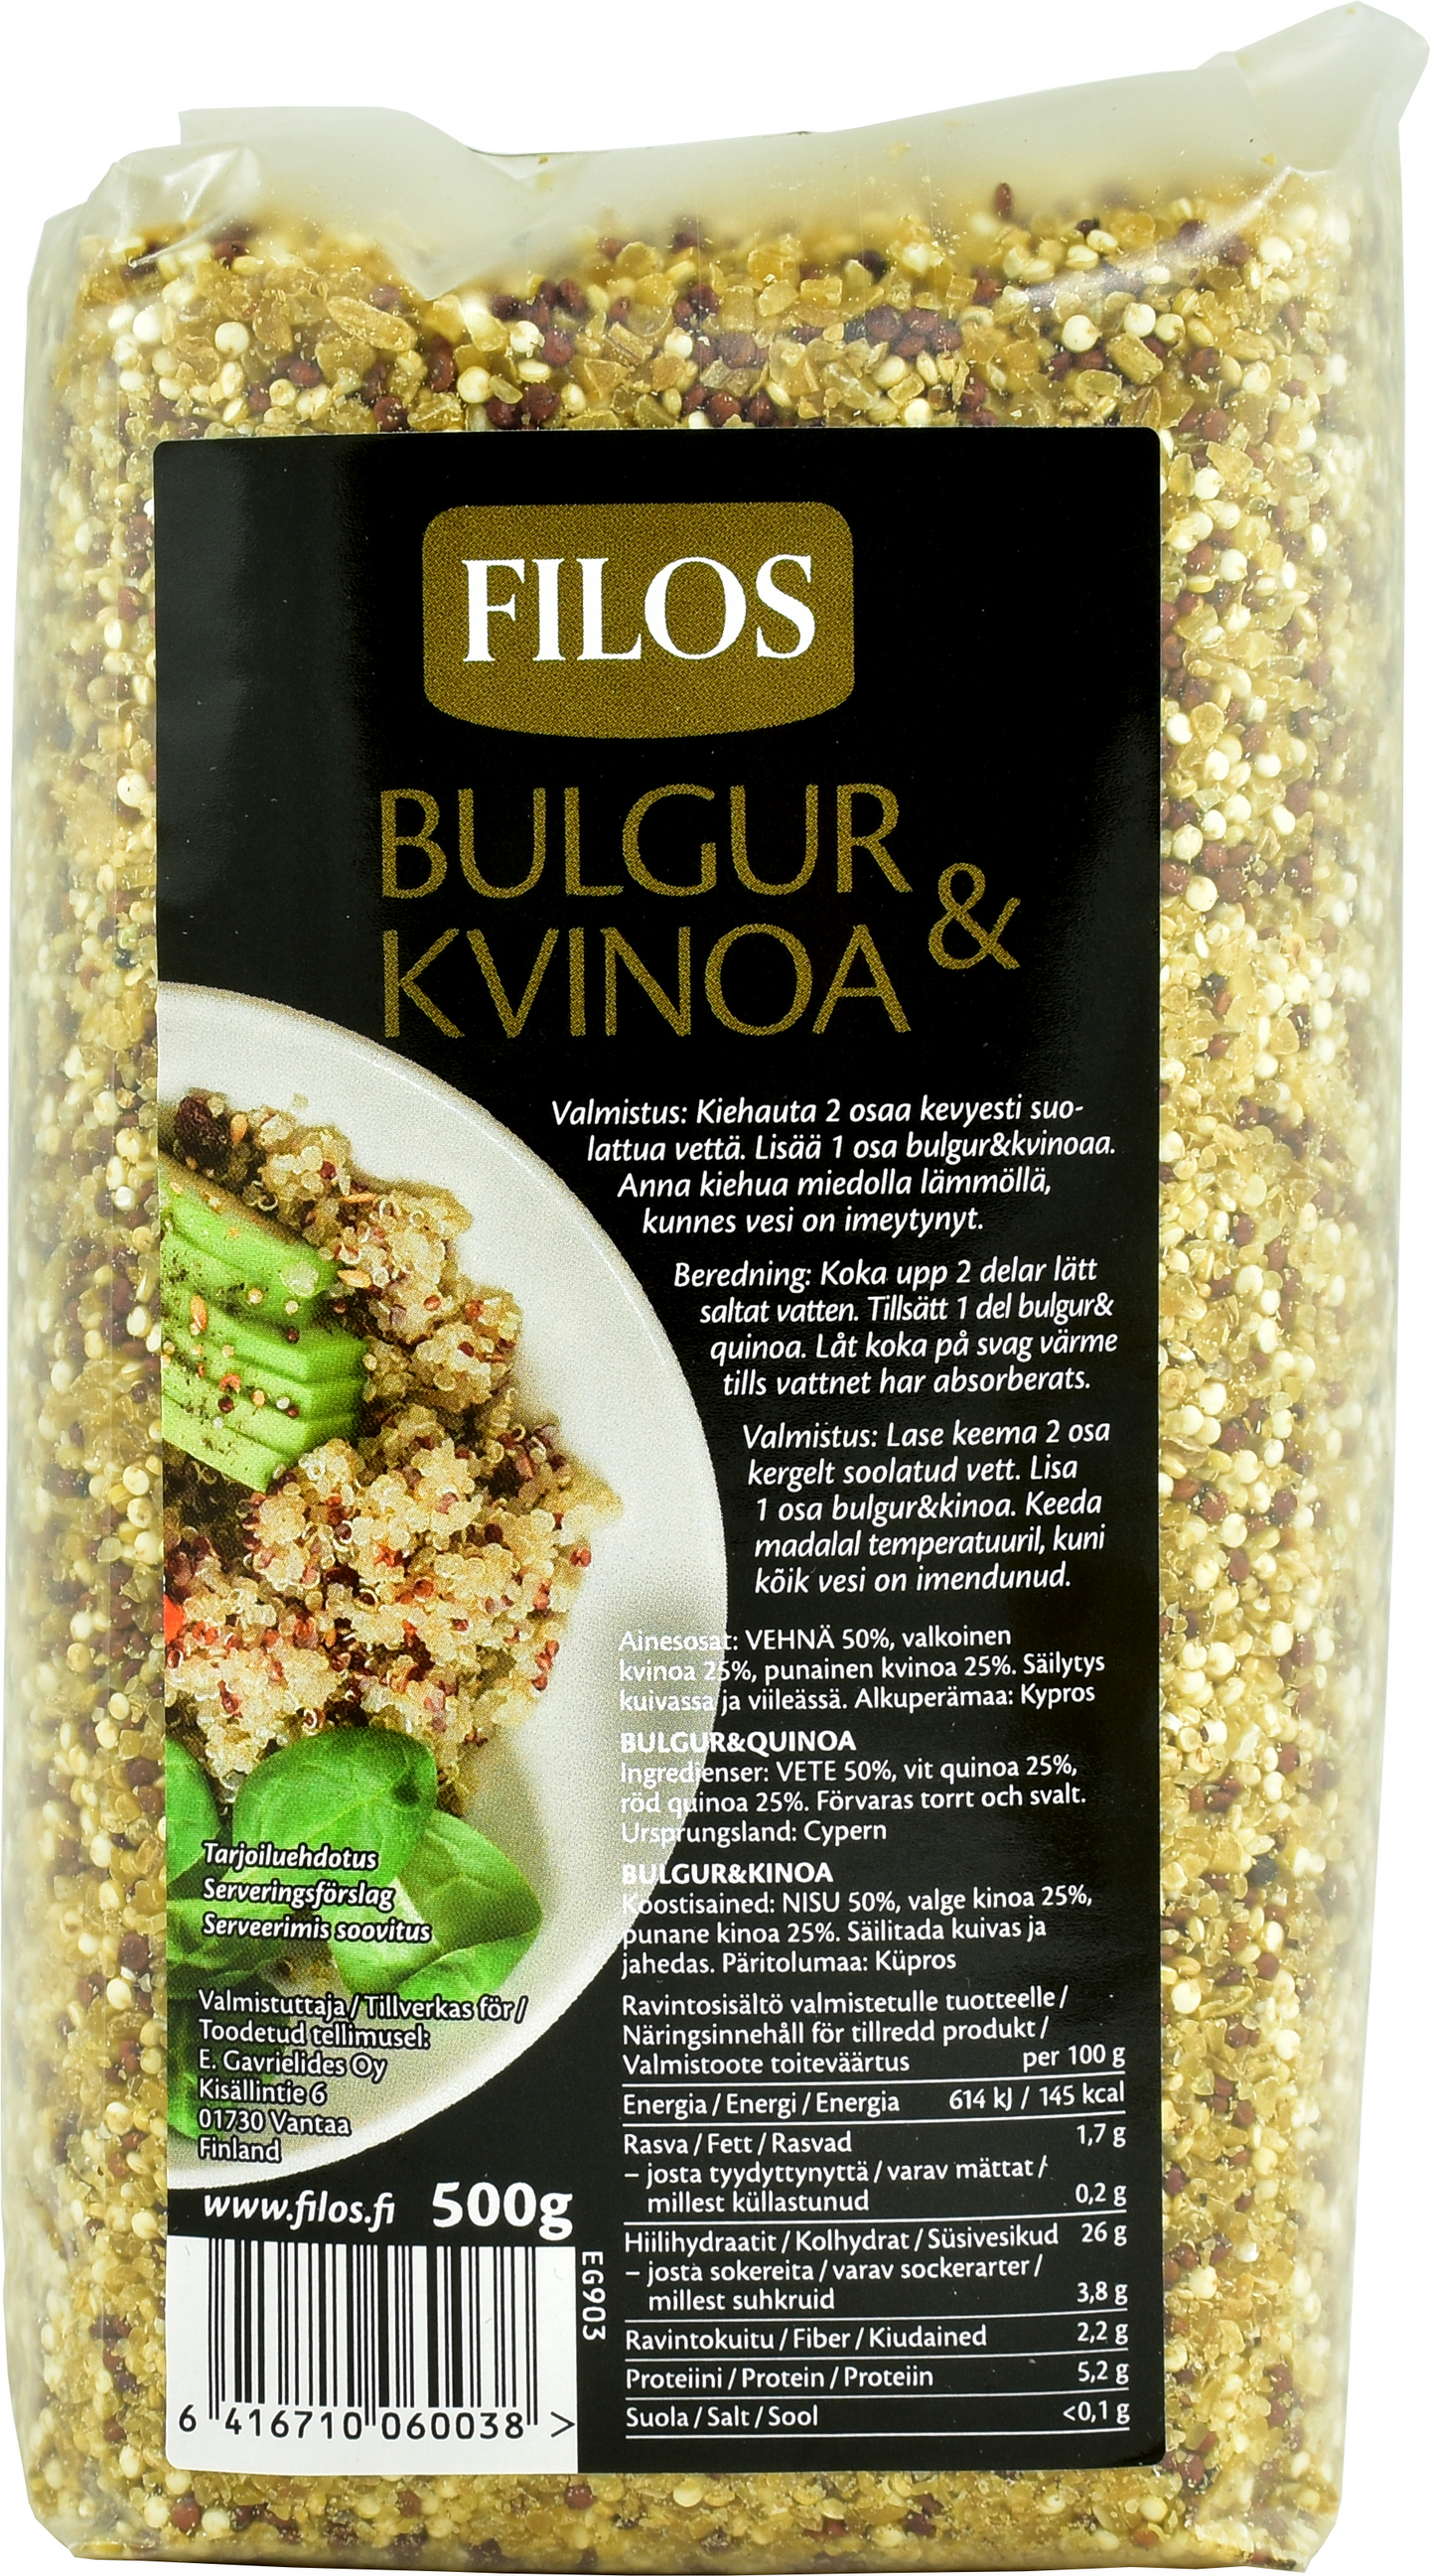 Filos bulgur ja kvinoa 500g